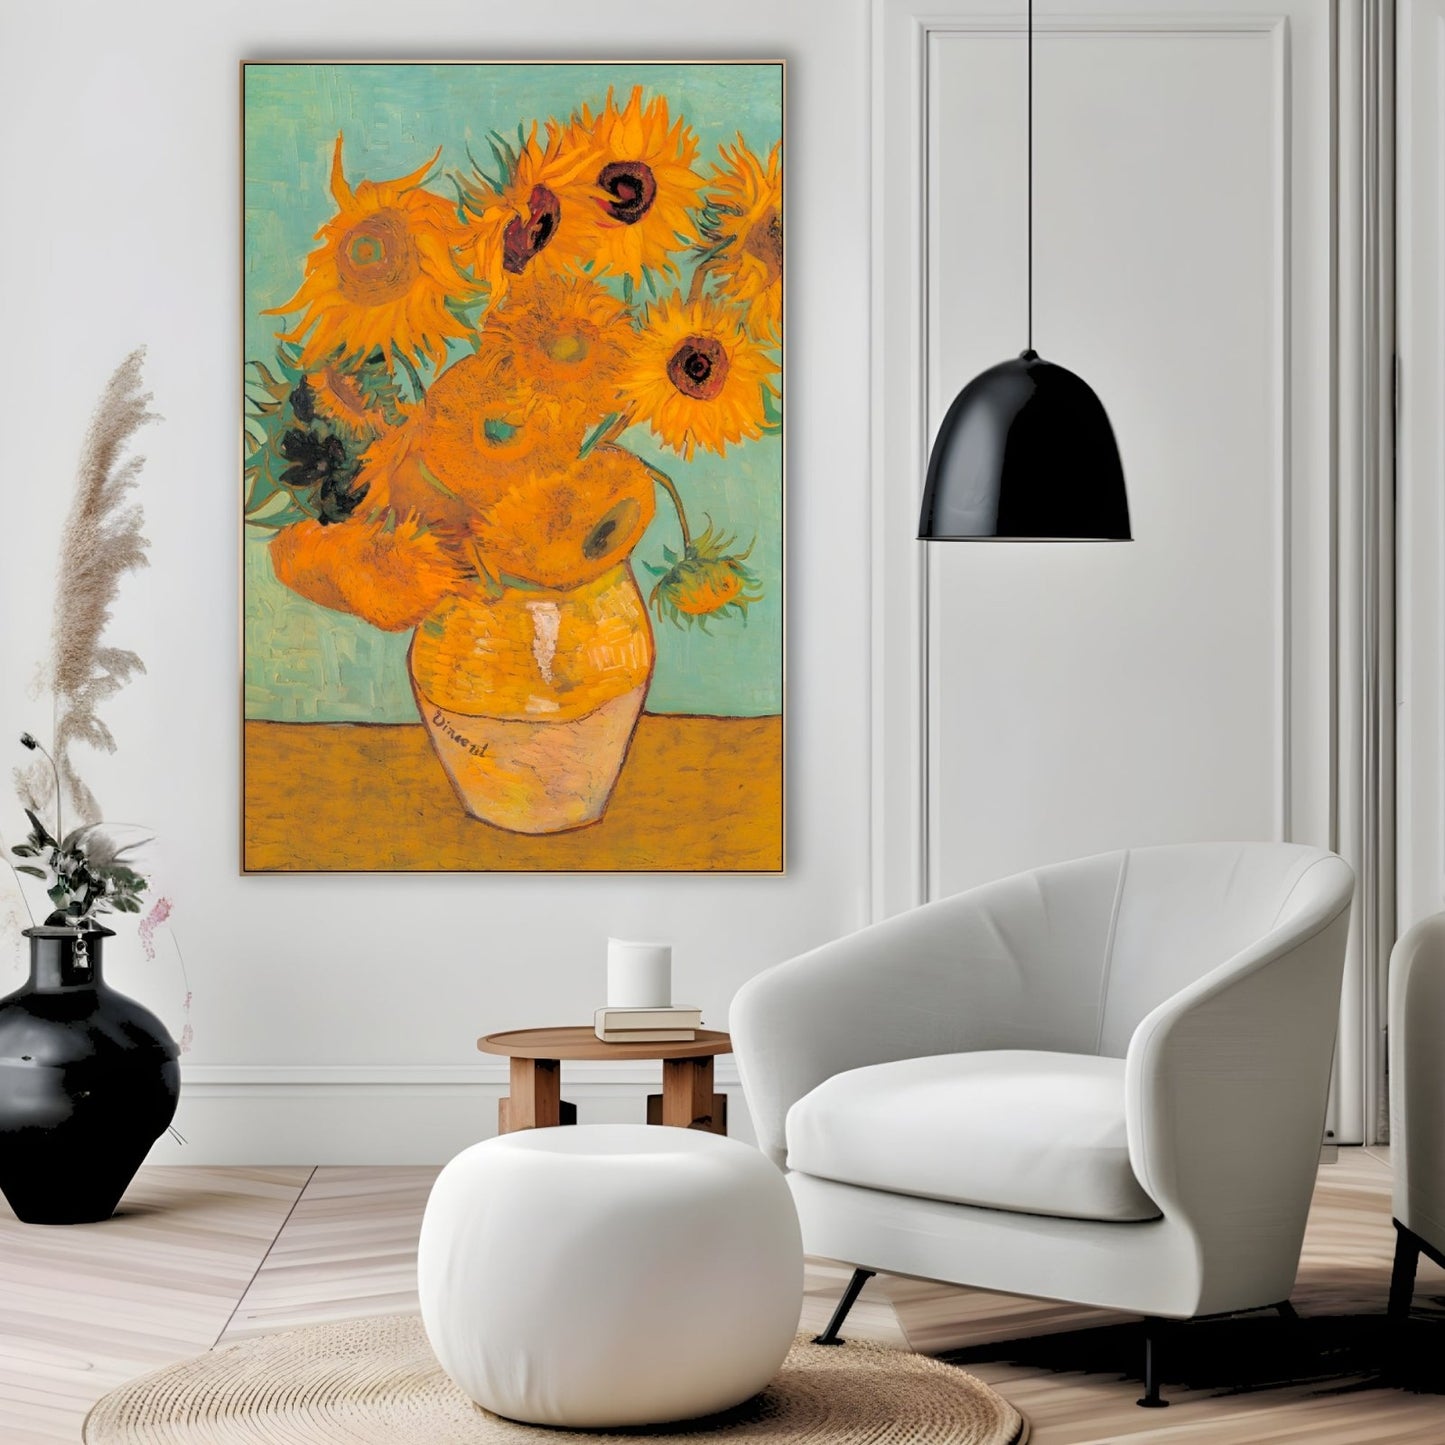 Floarea soarelui II, Vincent Van Gogh